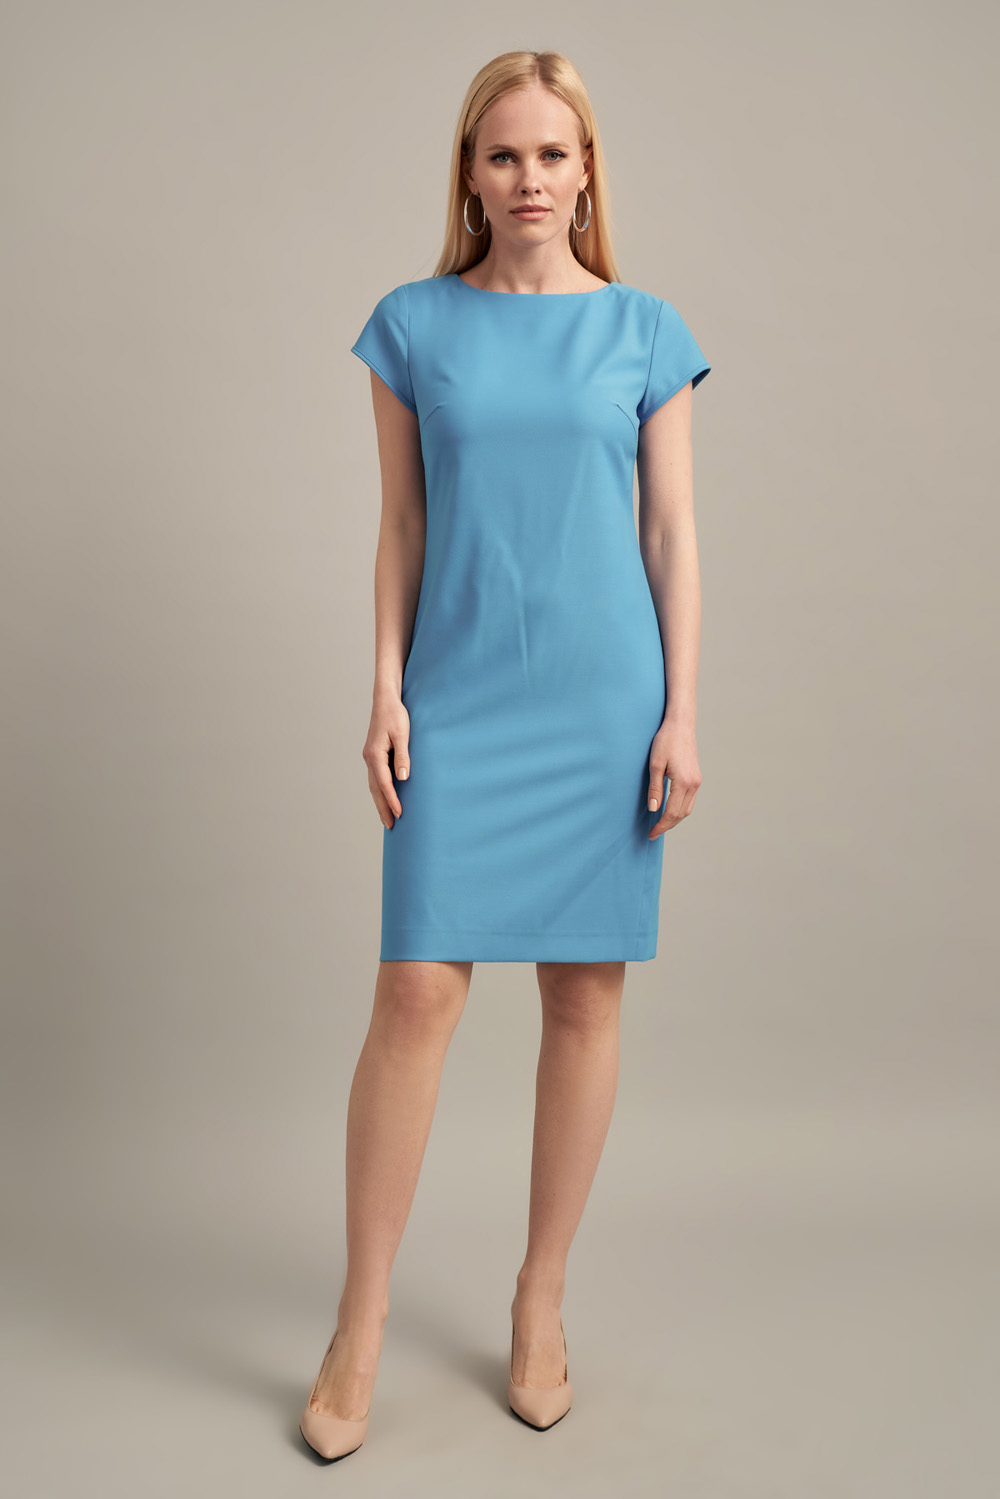 Сукня футляр яскраво-блакитного кольору з коротким рукавом